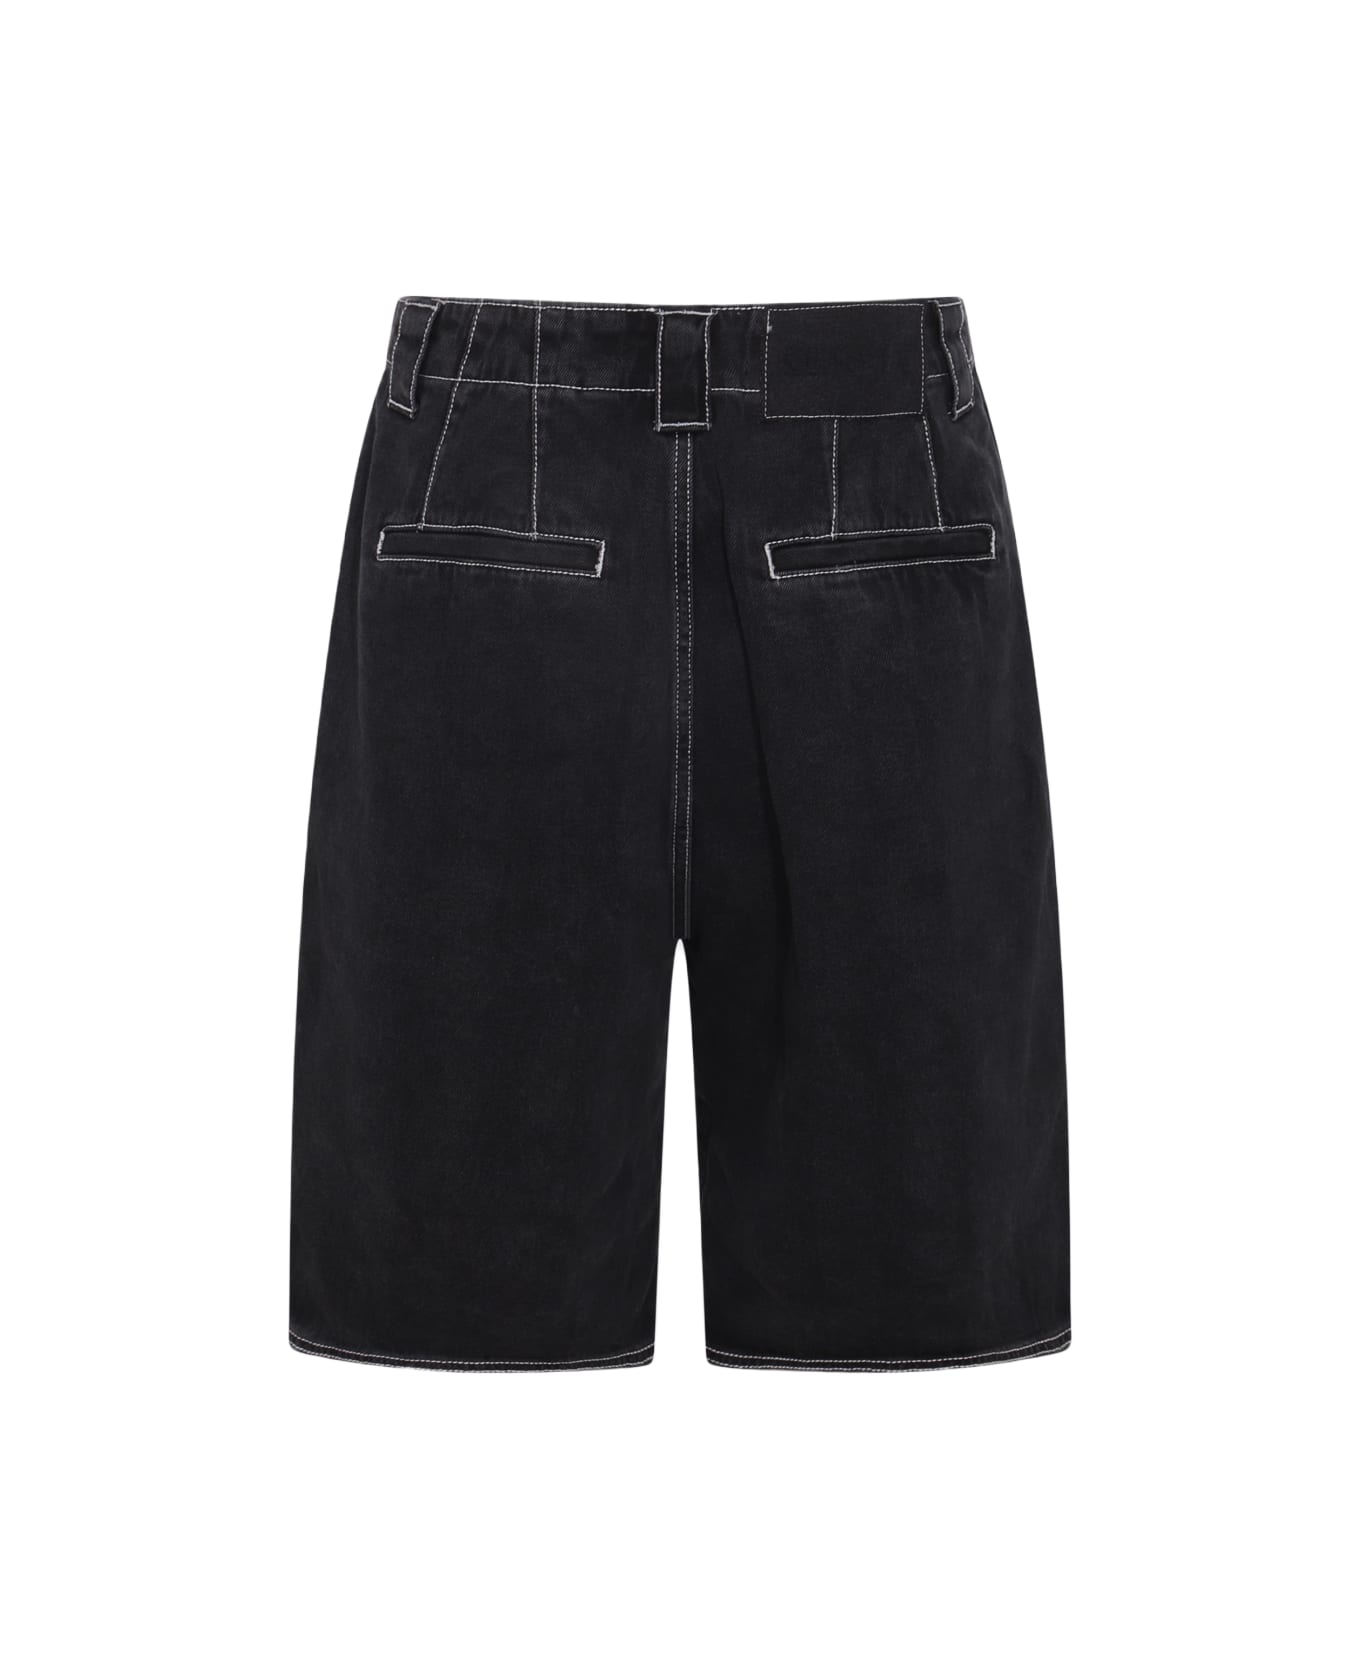 Sunnei Washed Black Denim Shorts - WASHED BLACK DENIM